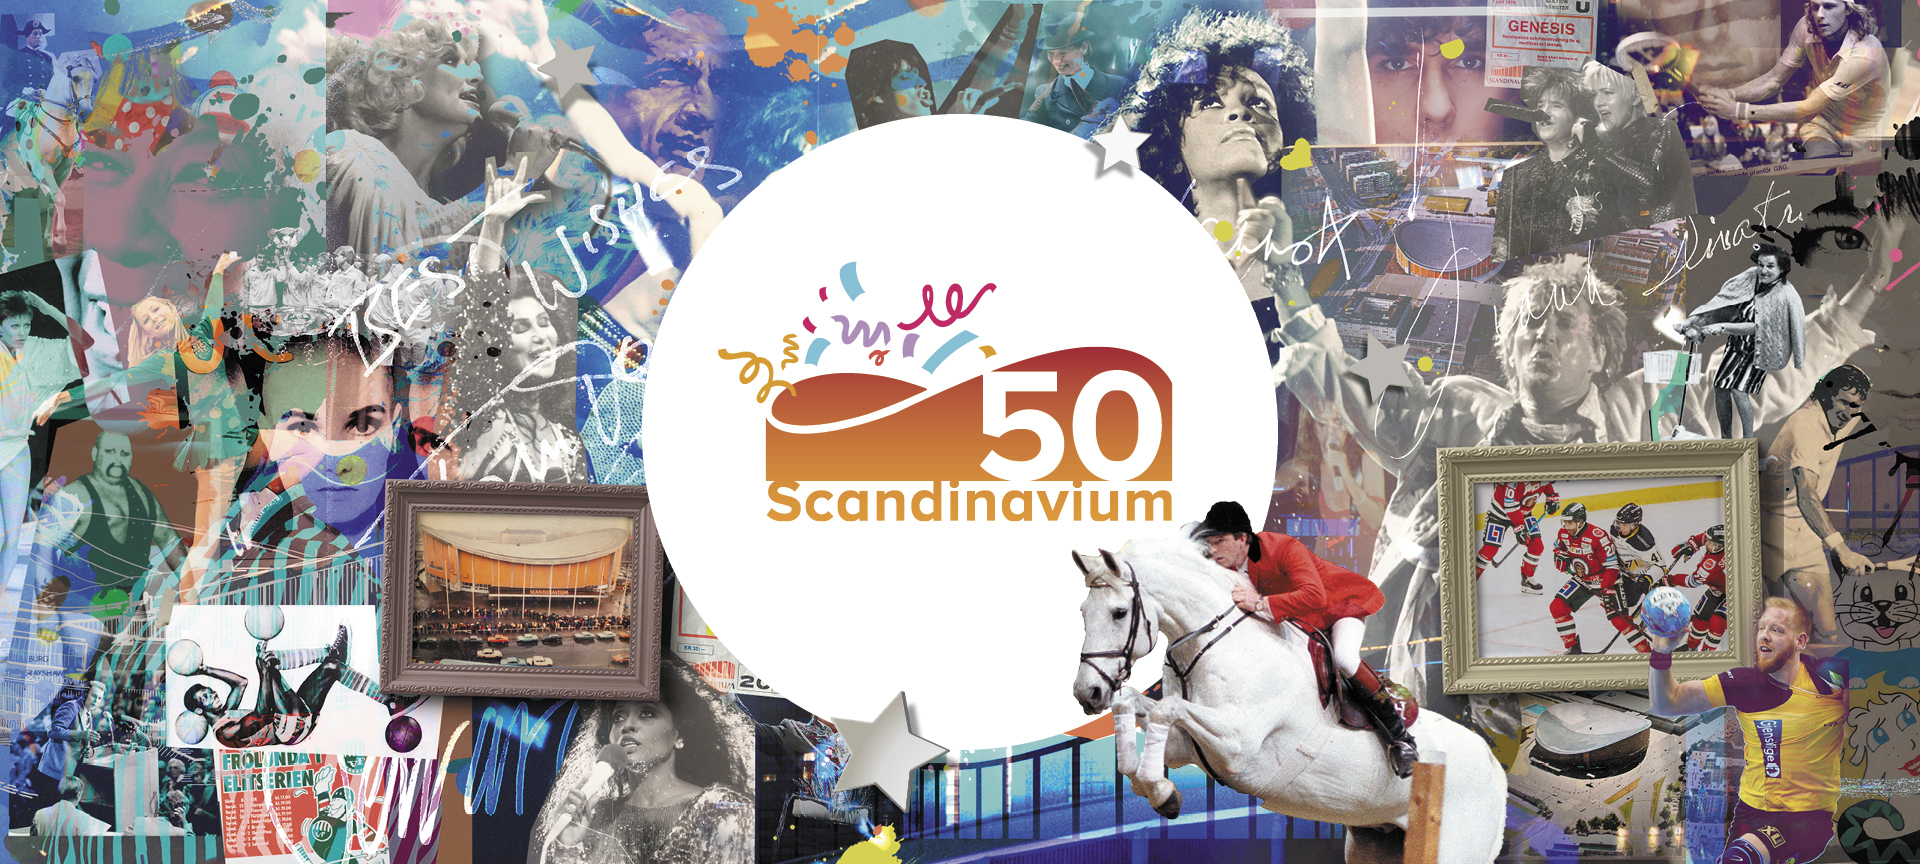 Kollage över historiska evenemang på Scandinavium. I mitten syns en logotyp med siffran 50.